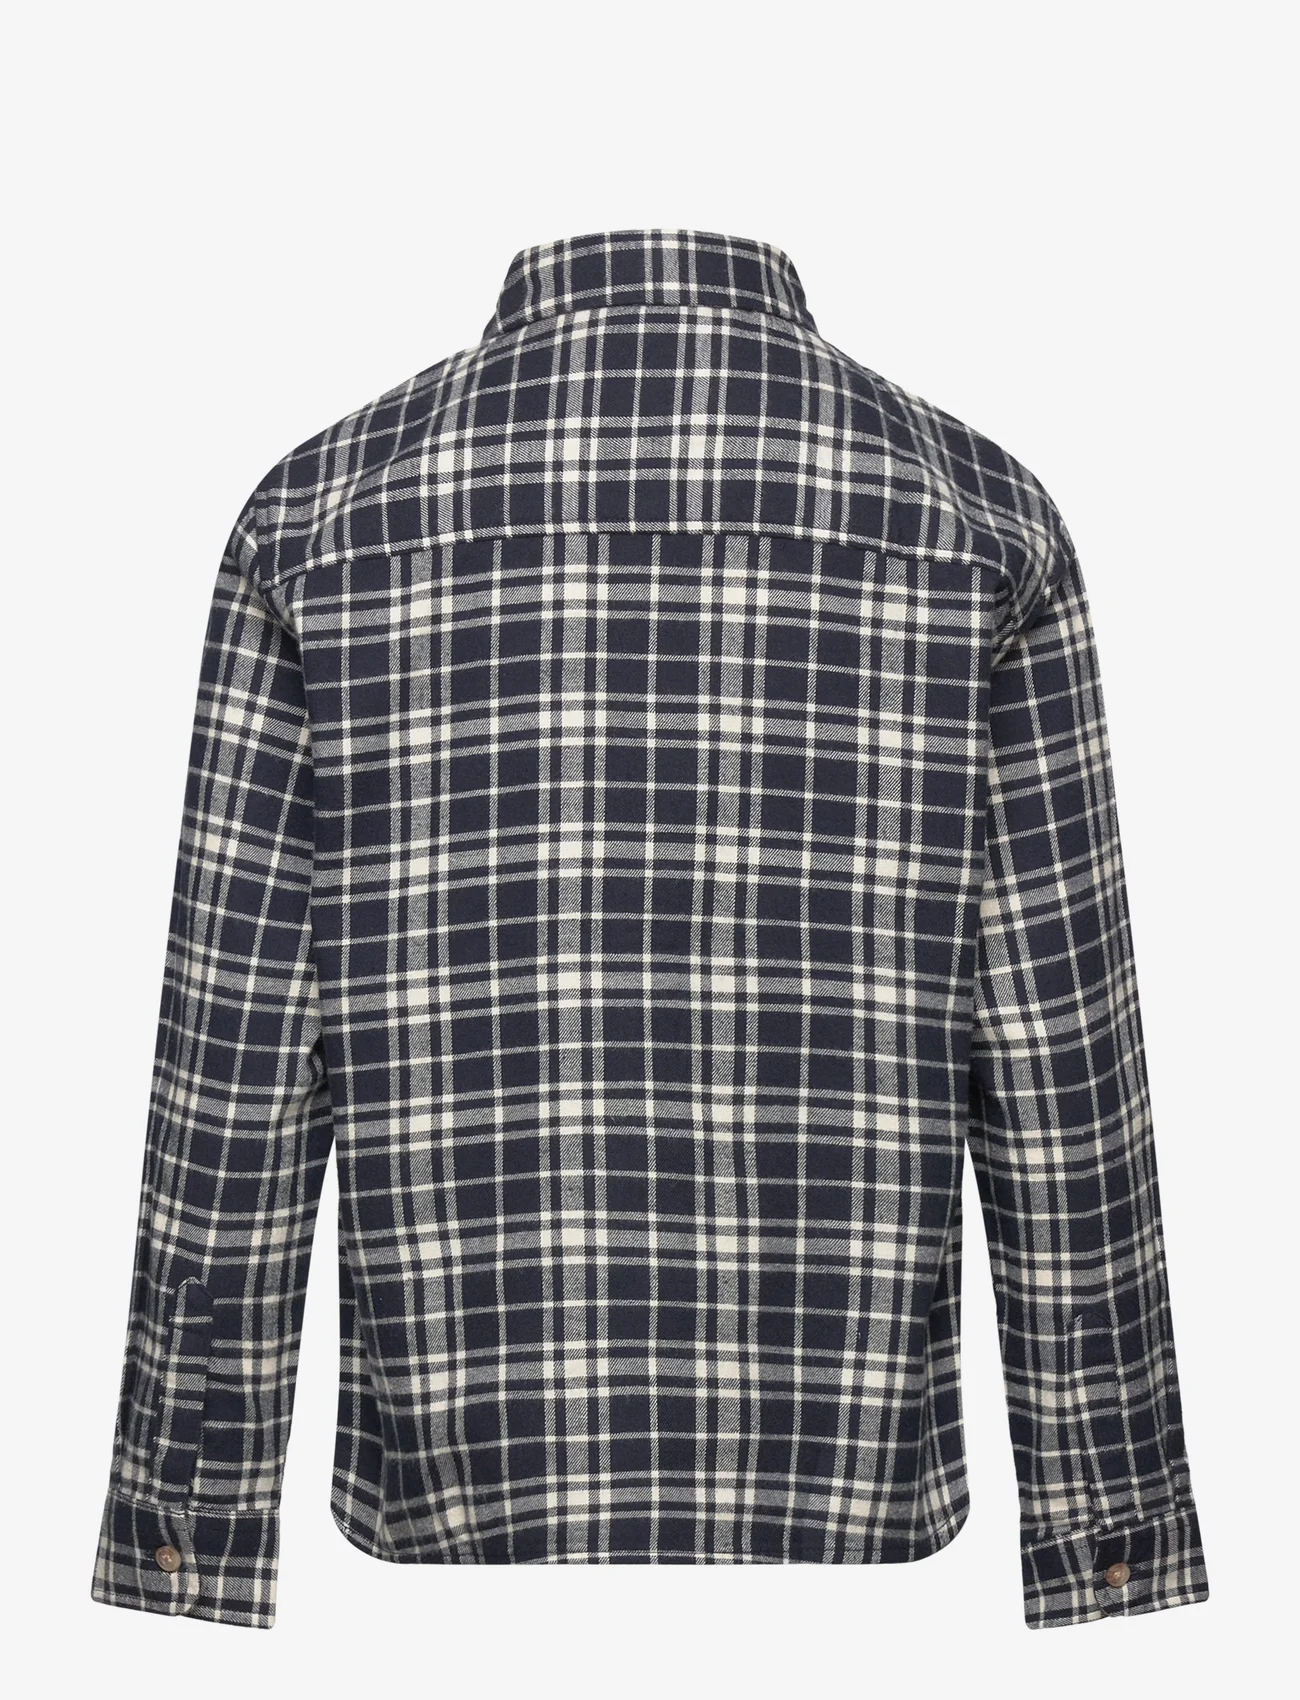 Mango - Regular-fit check shirt - långärmade skjortor - navy - 1